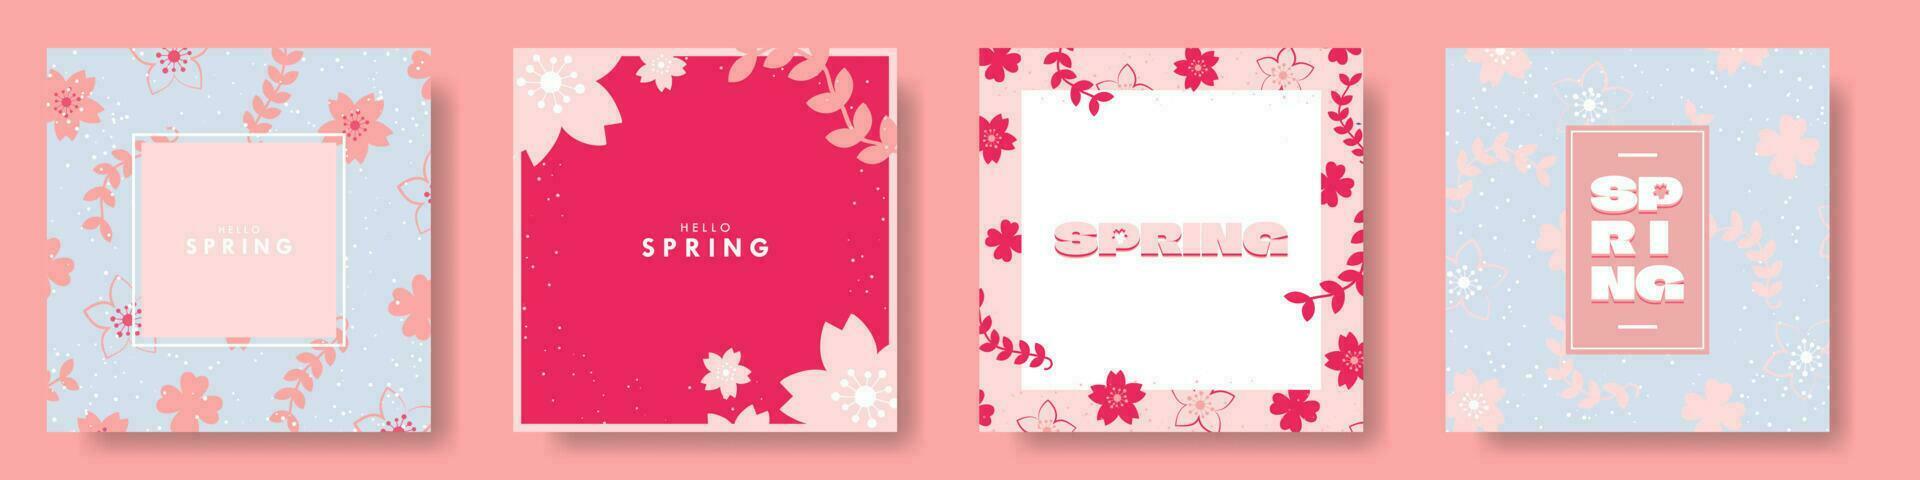 Hola primavera tarjeta póster colocar. de moda y vistoso floral diseños vector ilustración. eps 10